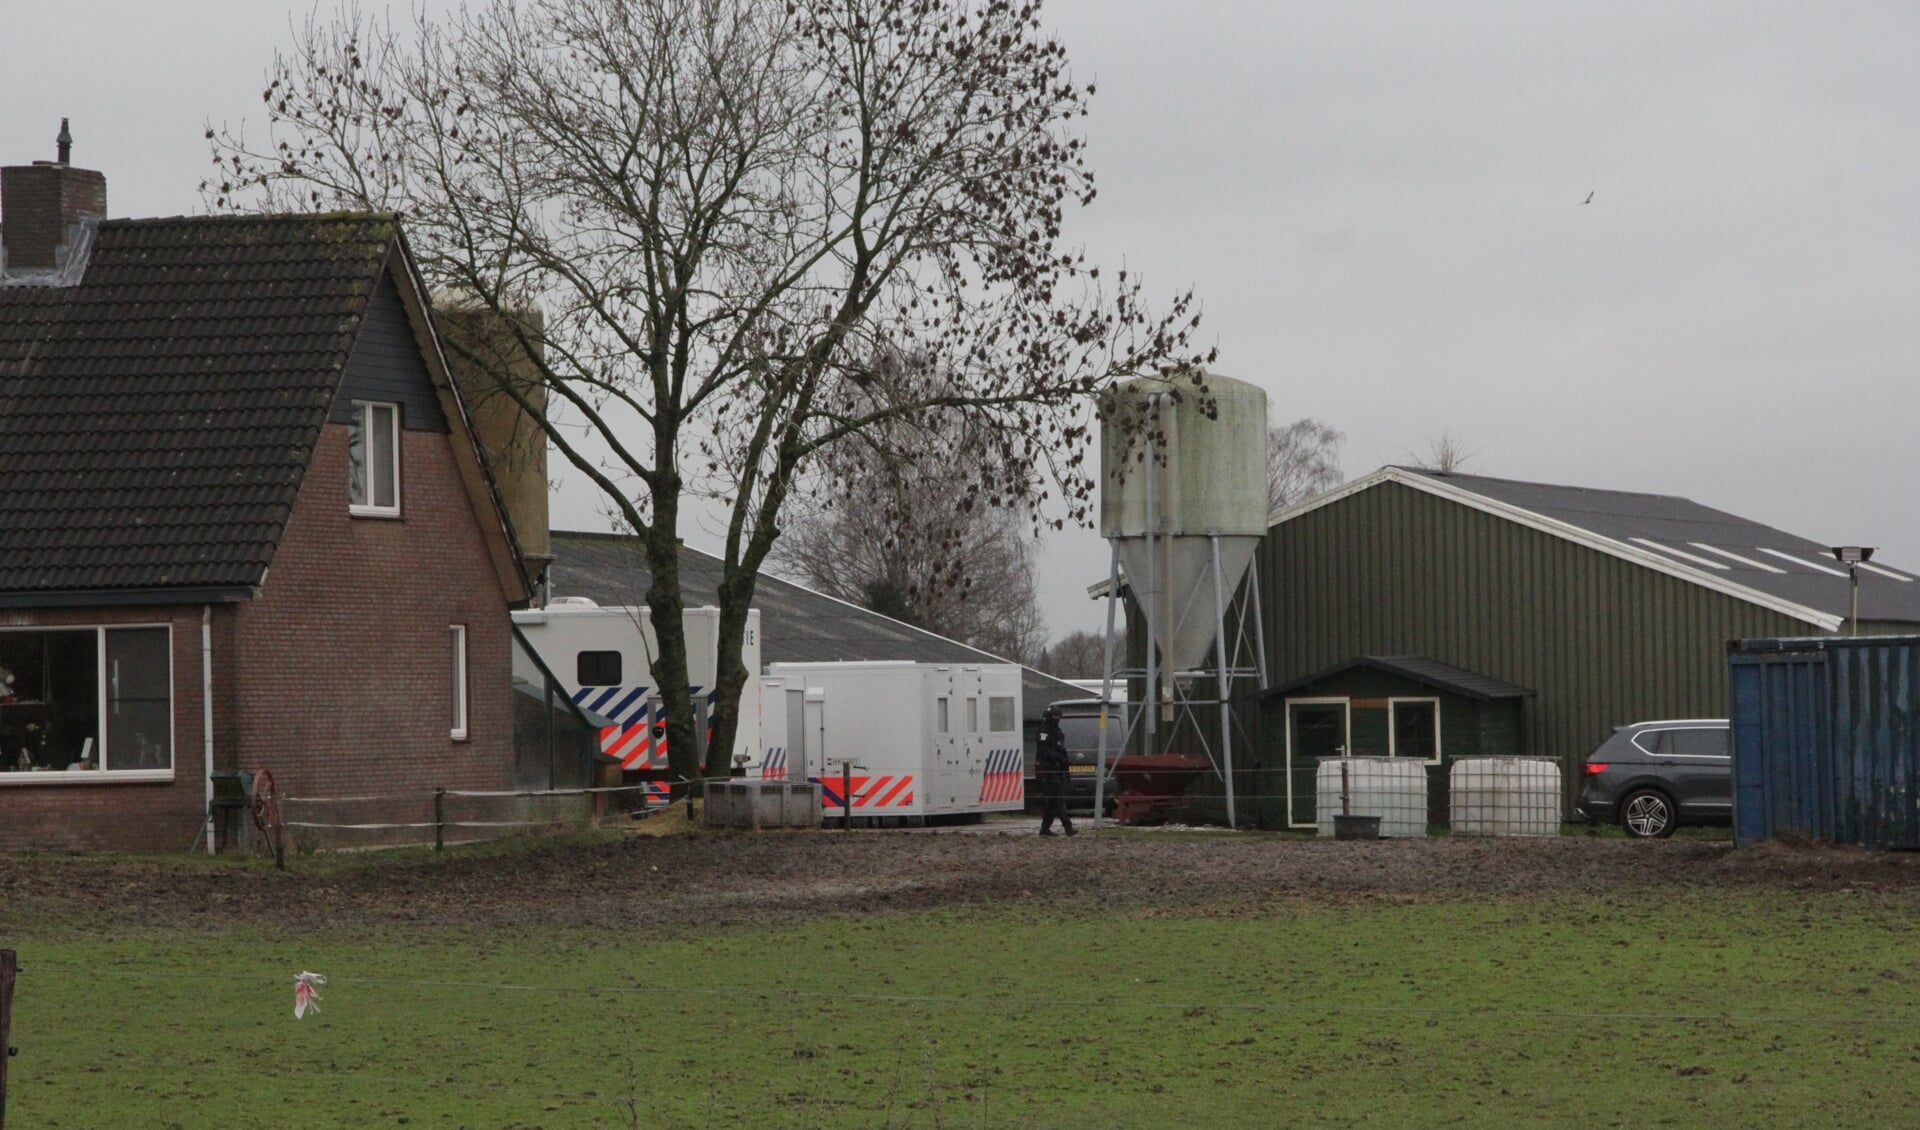 Politie rolt drugslaboratorium op in Millingen.